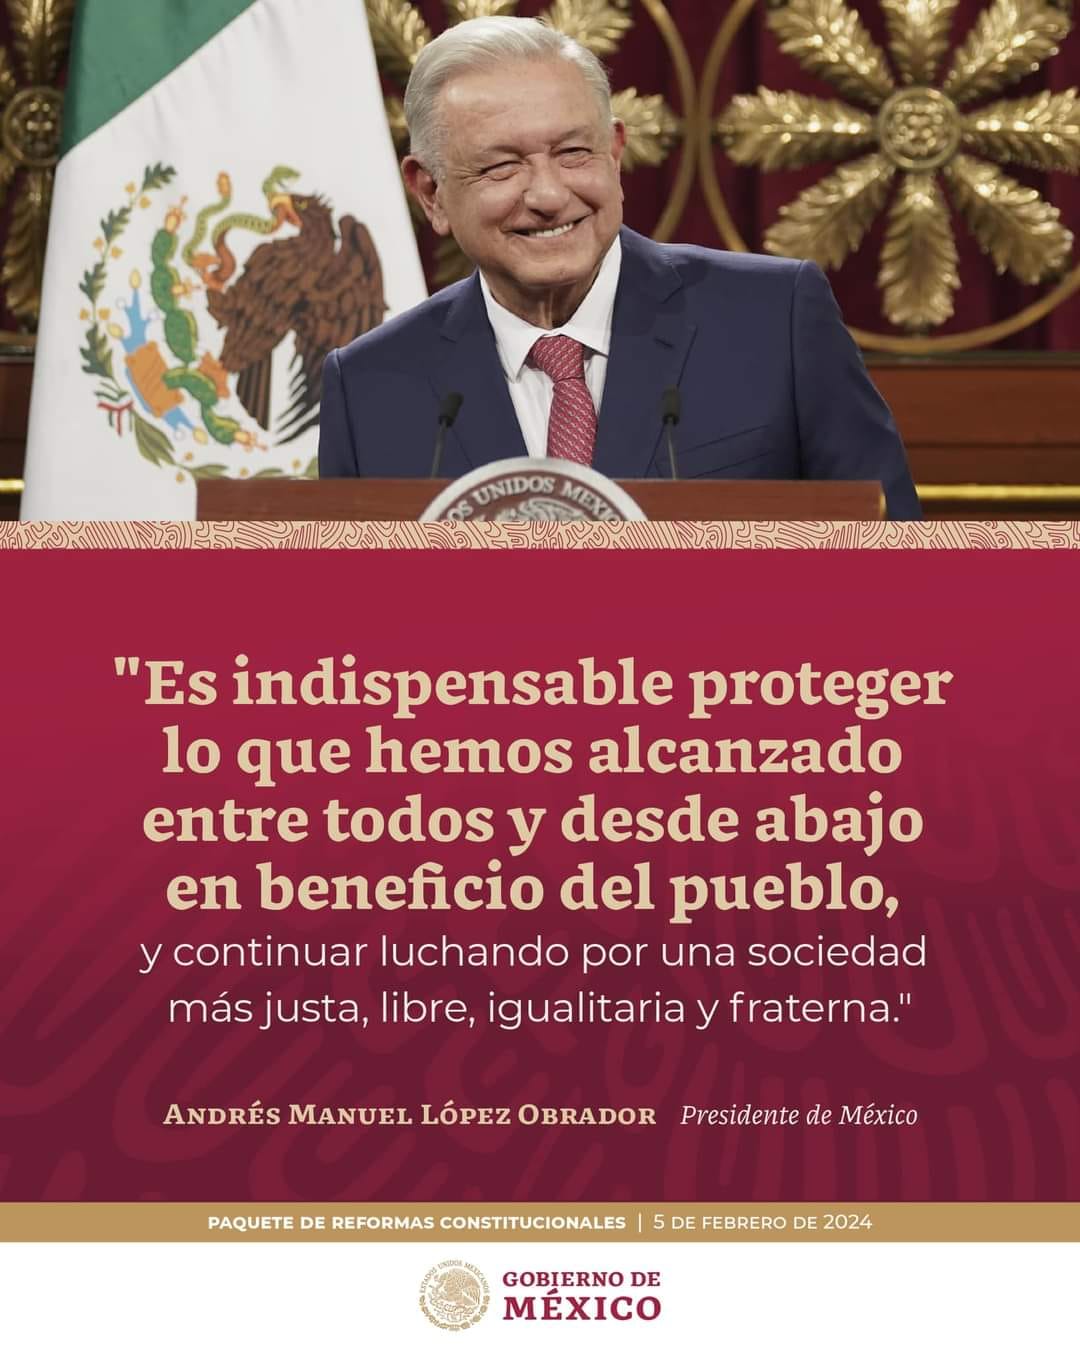 El presidente de México presentó el paquete de reformas que entregará al Congreso, de las cuales 18 son cambios constitucionales y dos a leyes secundarias